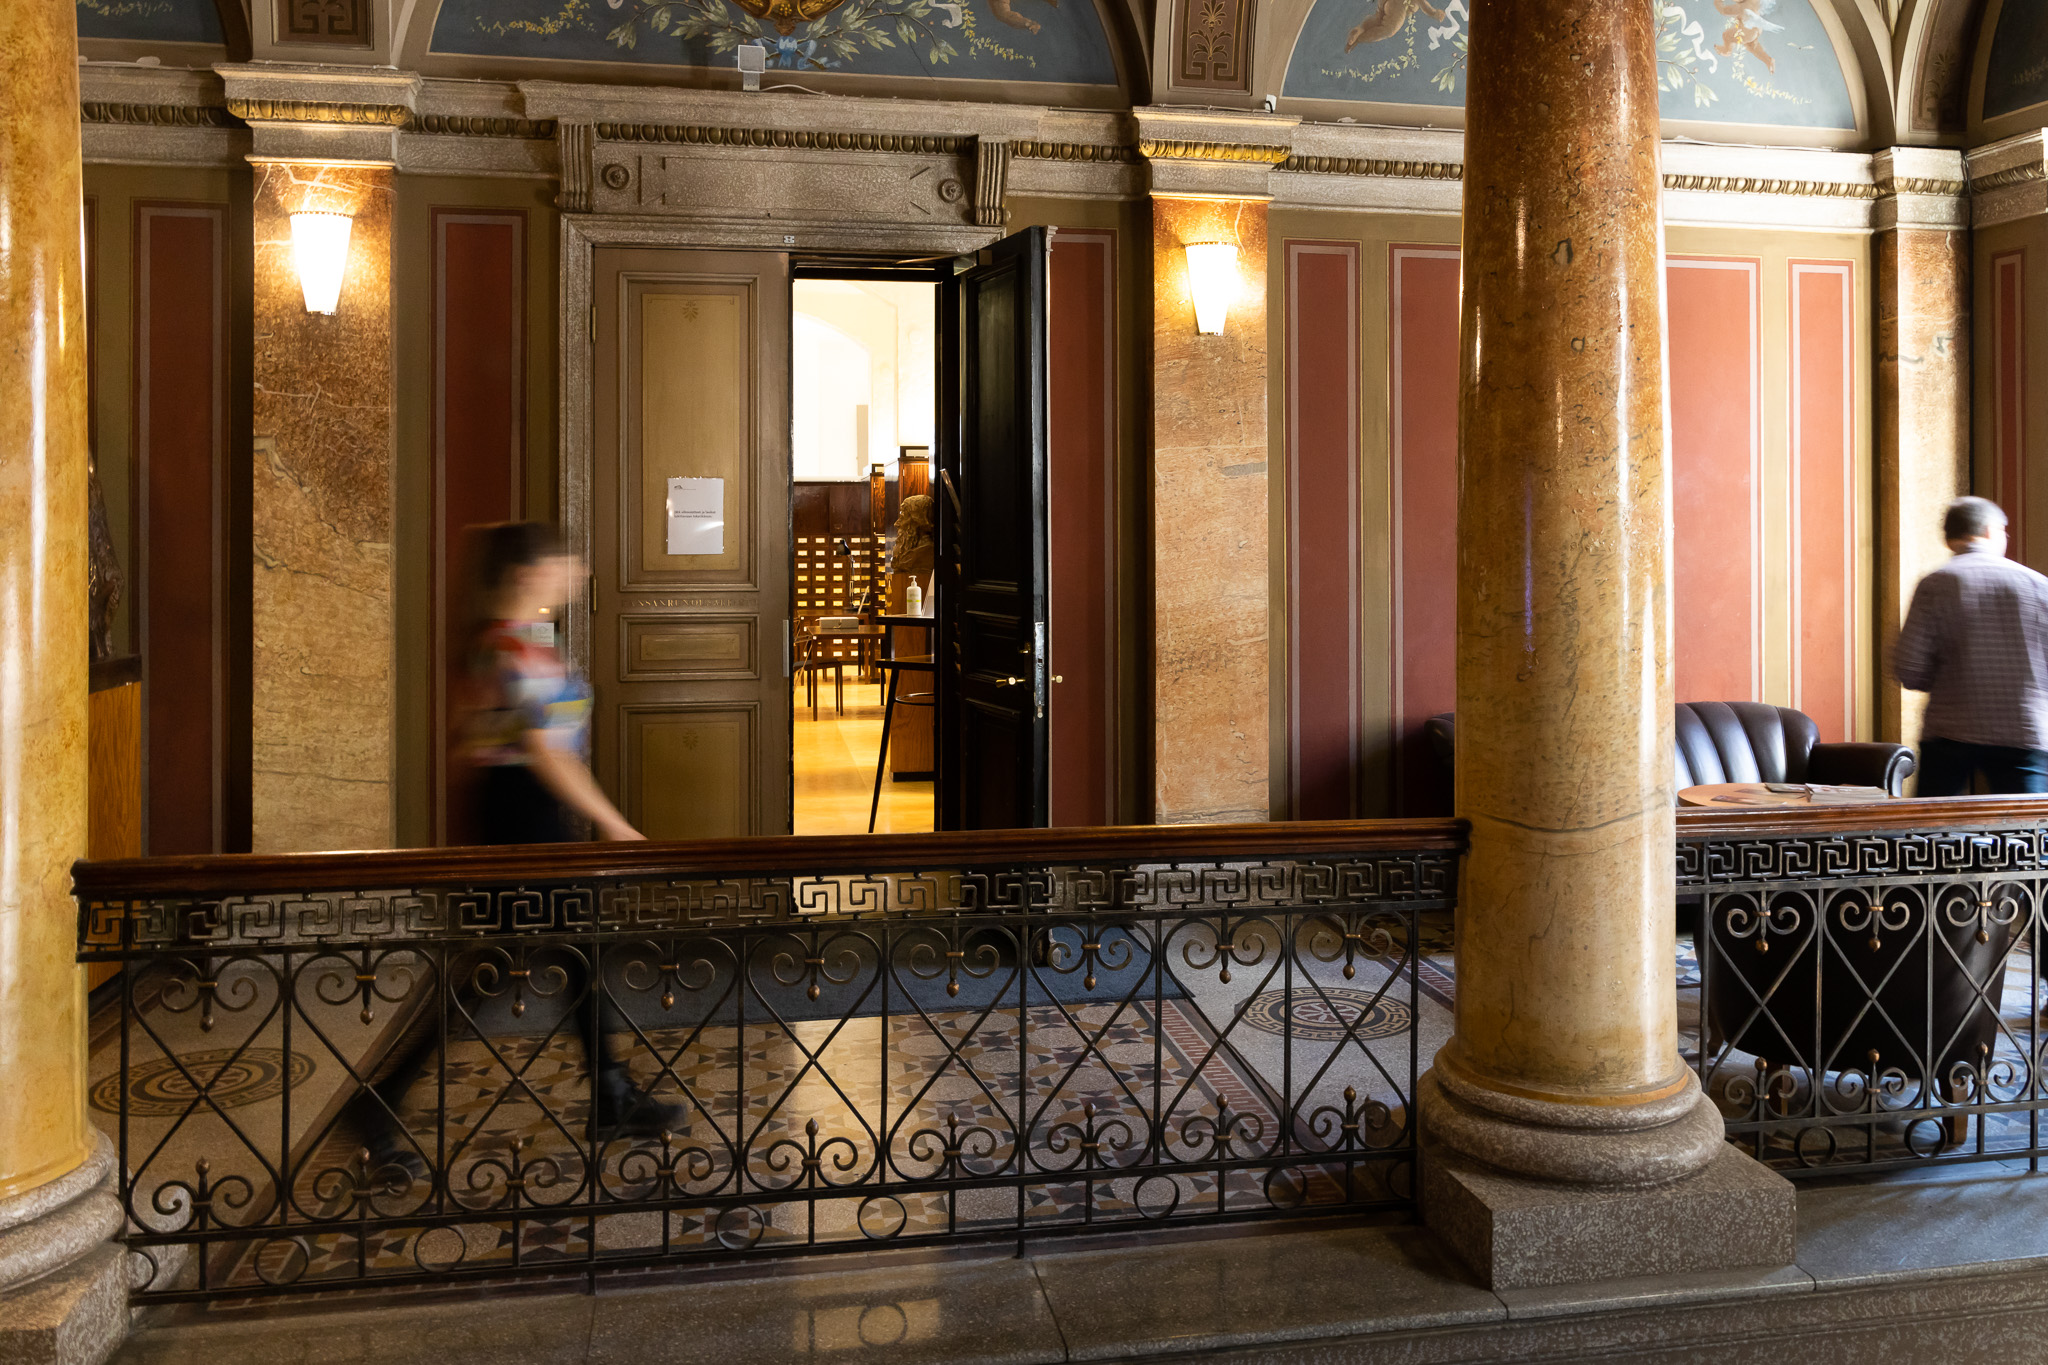 Kuva SKS:n aulasta ja avonainen arkistosalin ovi. Kuvaaja: Gary Wornell.